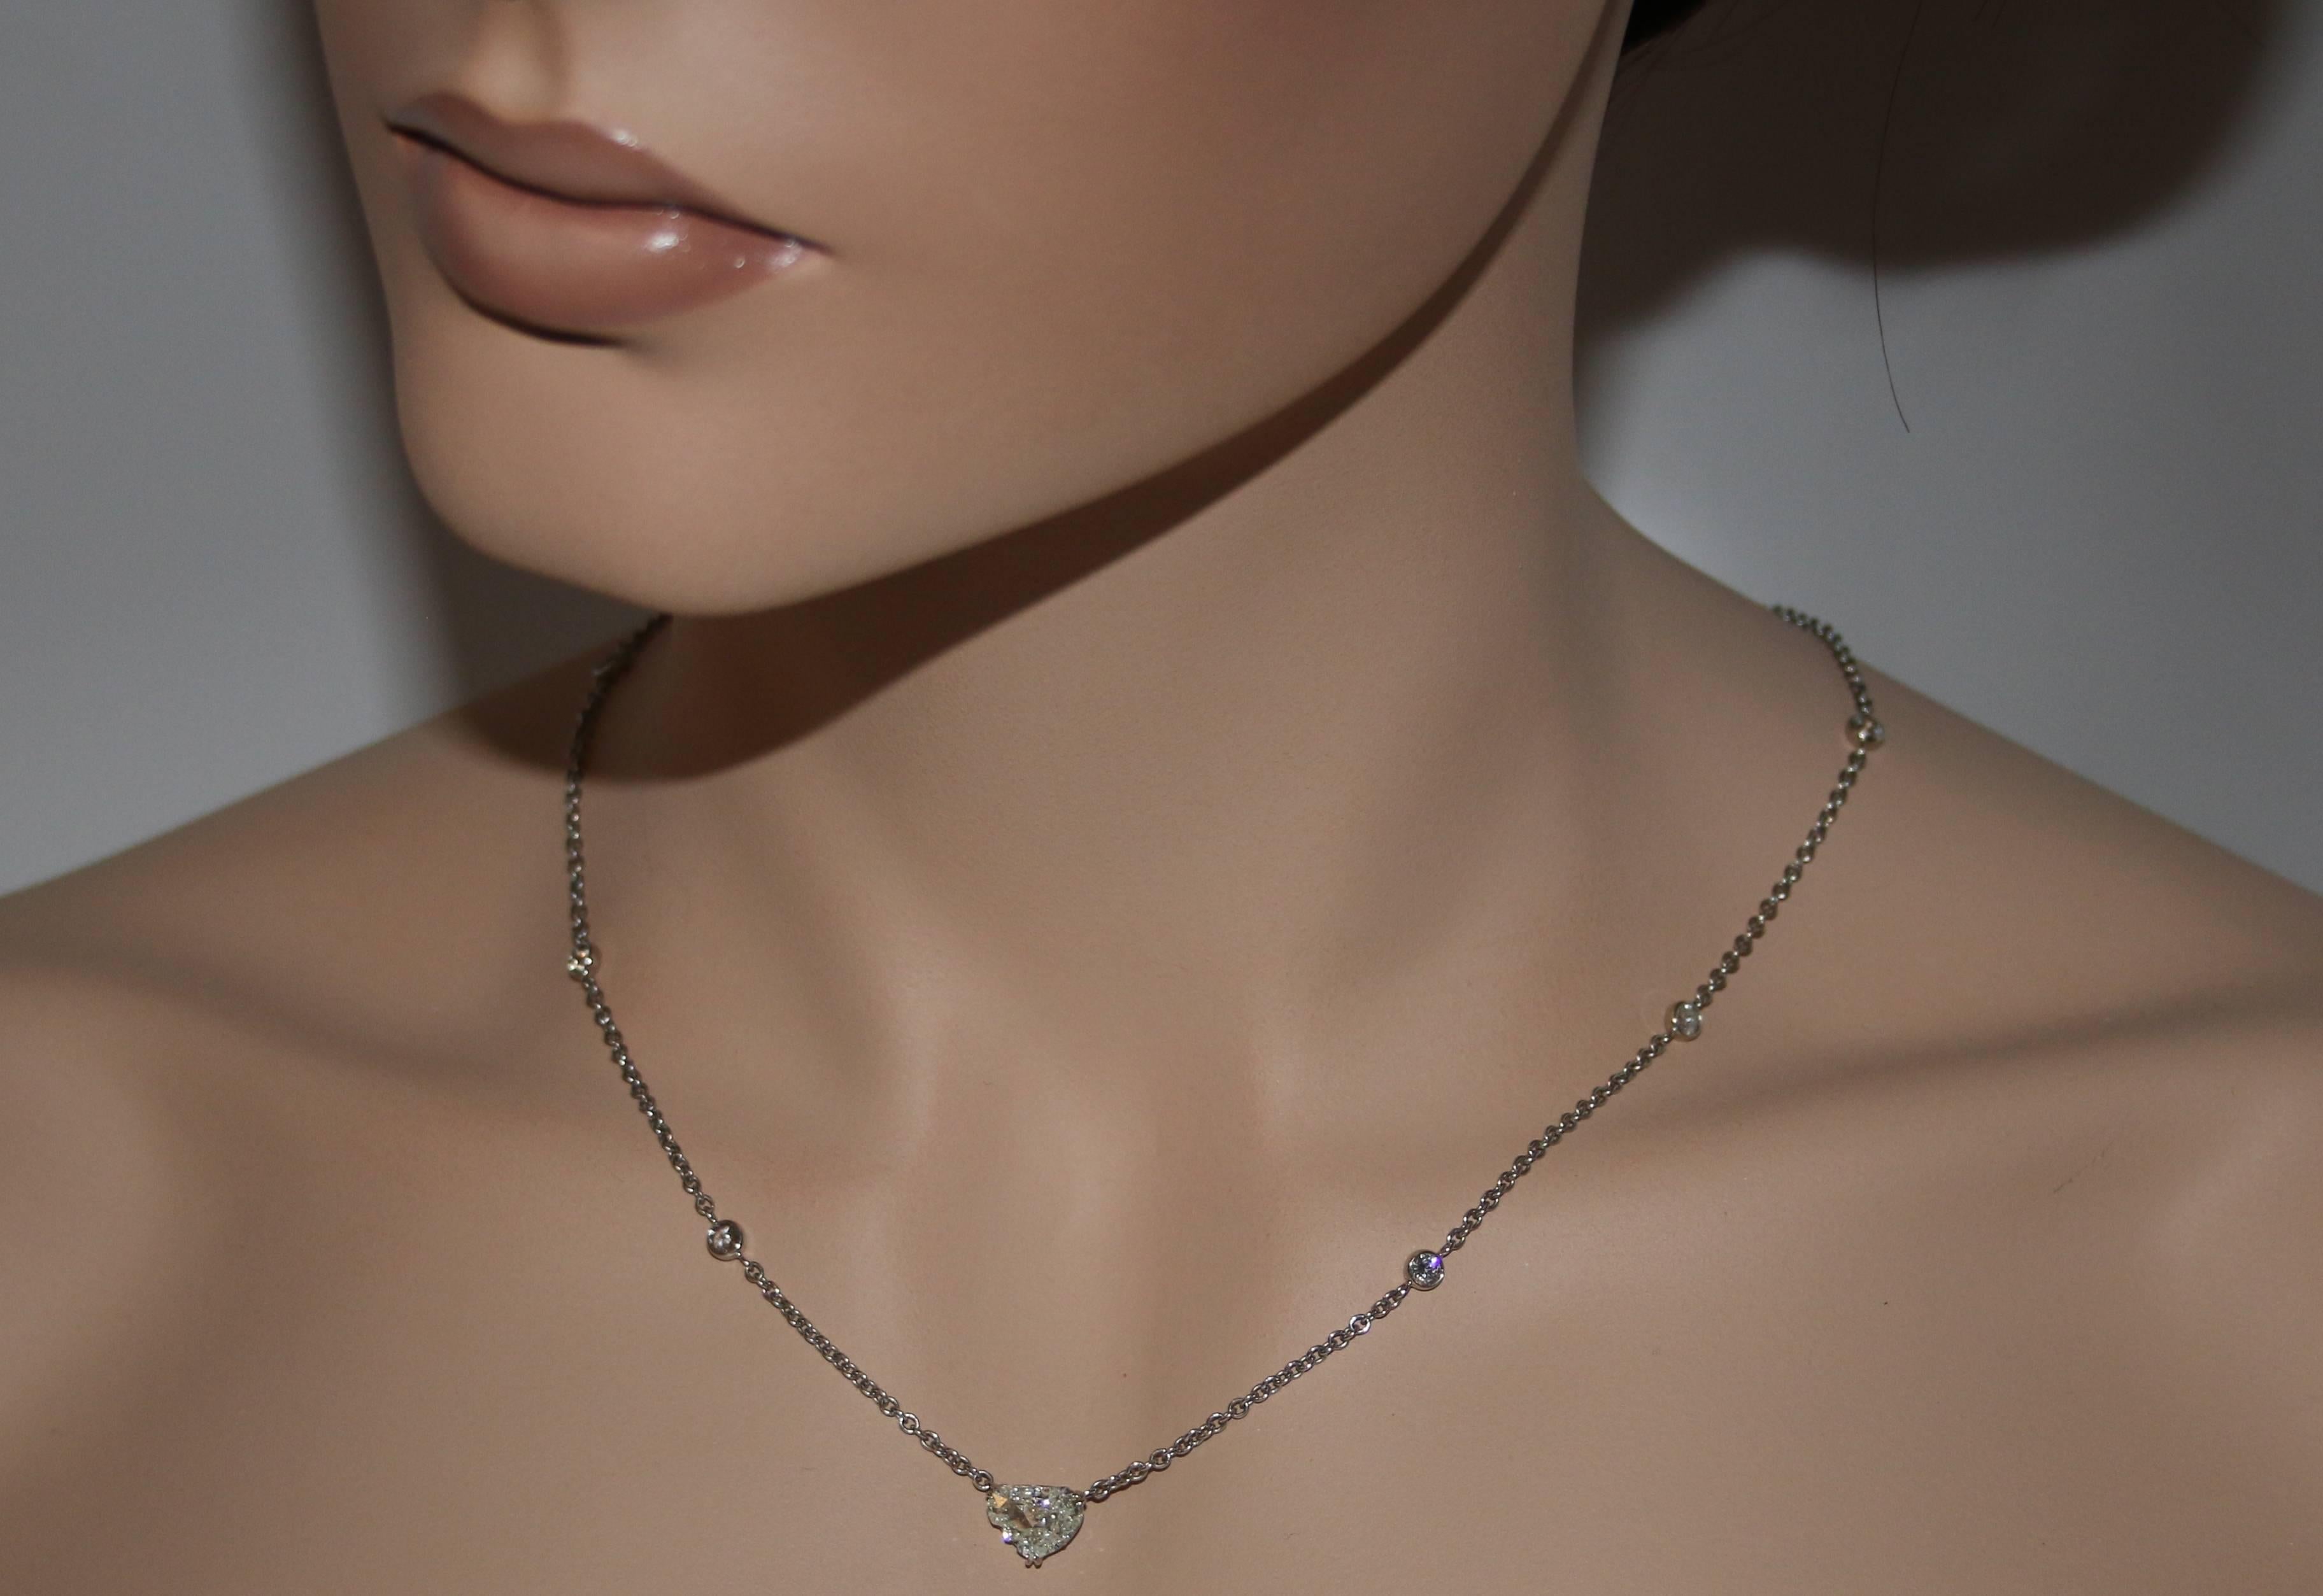 Sehr seltener und nur einmaliger Diamant
Die Halskette wird speziell für den Mittelstein angefertigt.
Die Halskette ist aus 18K Weißgold
Der Mittelstein ist ein GIA-zertifizierter Diamant im Butterfly-Schliff
Der Schmetterling hat 1,72 Karat J